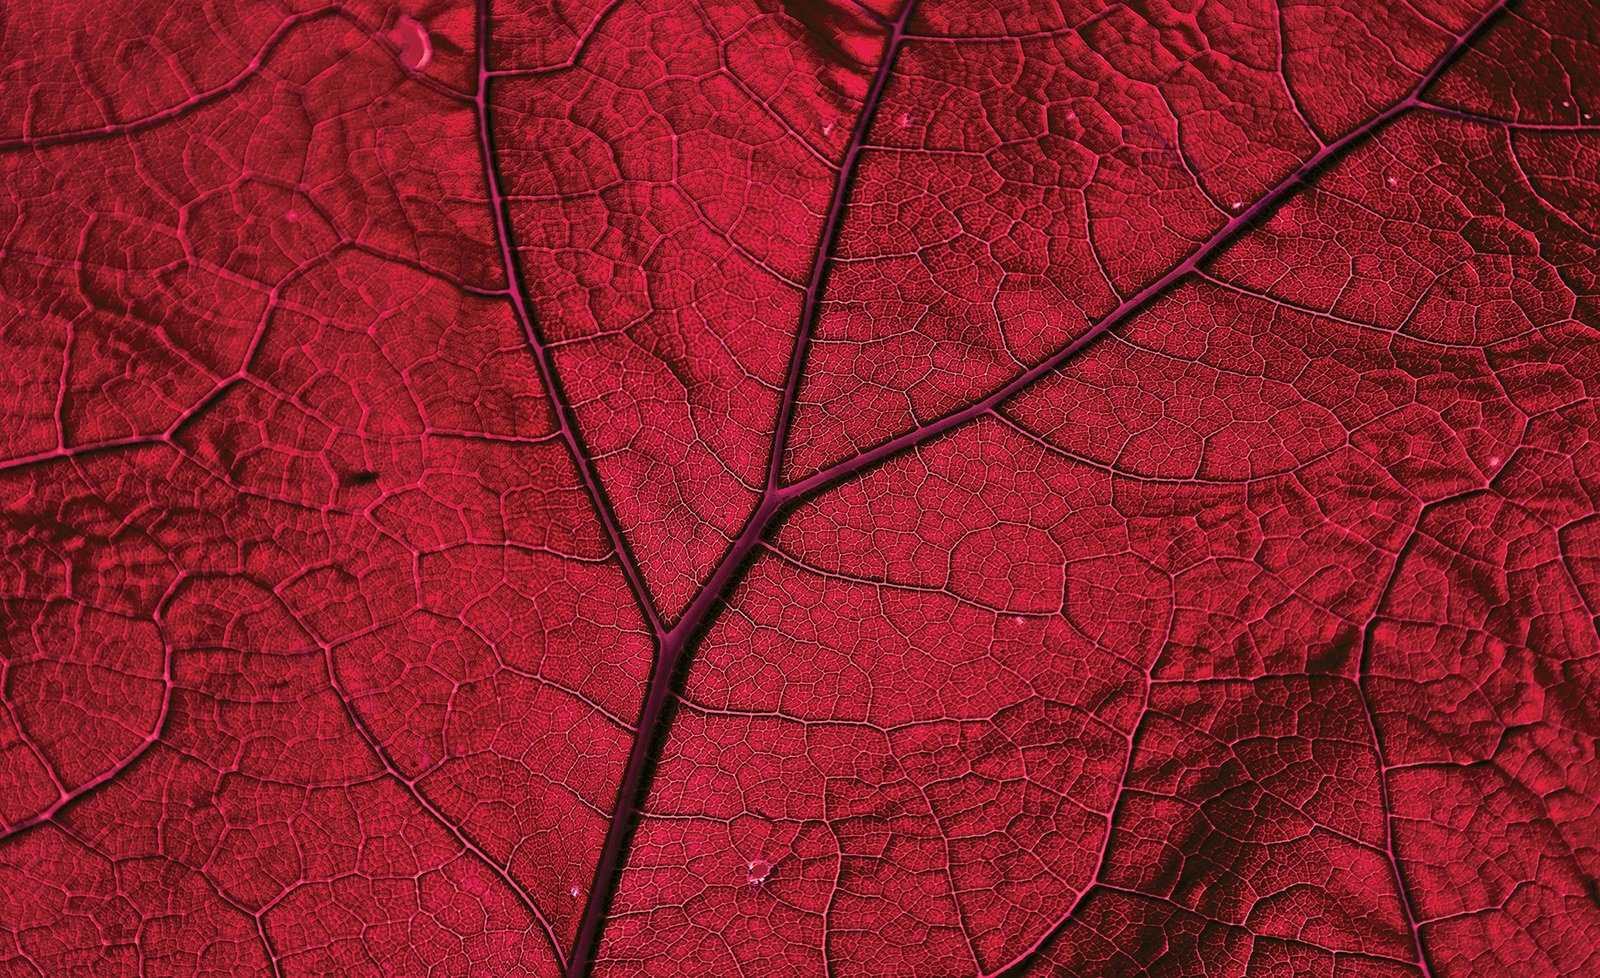 Consalnet Vliesbehang Close-up rode blad